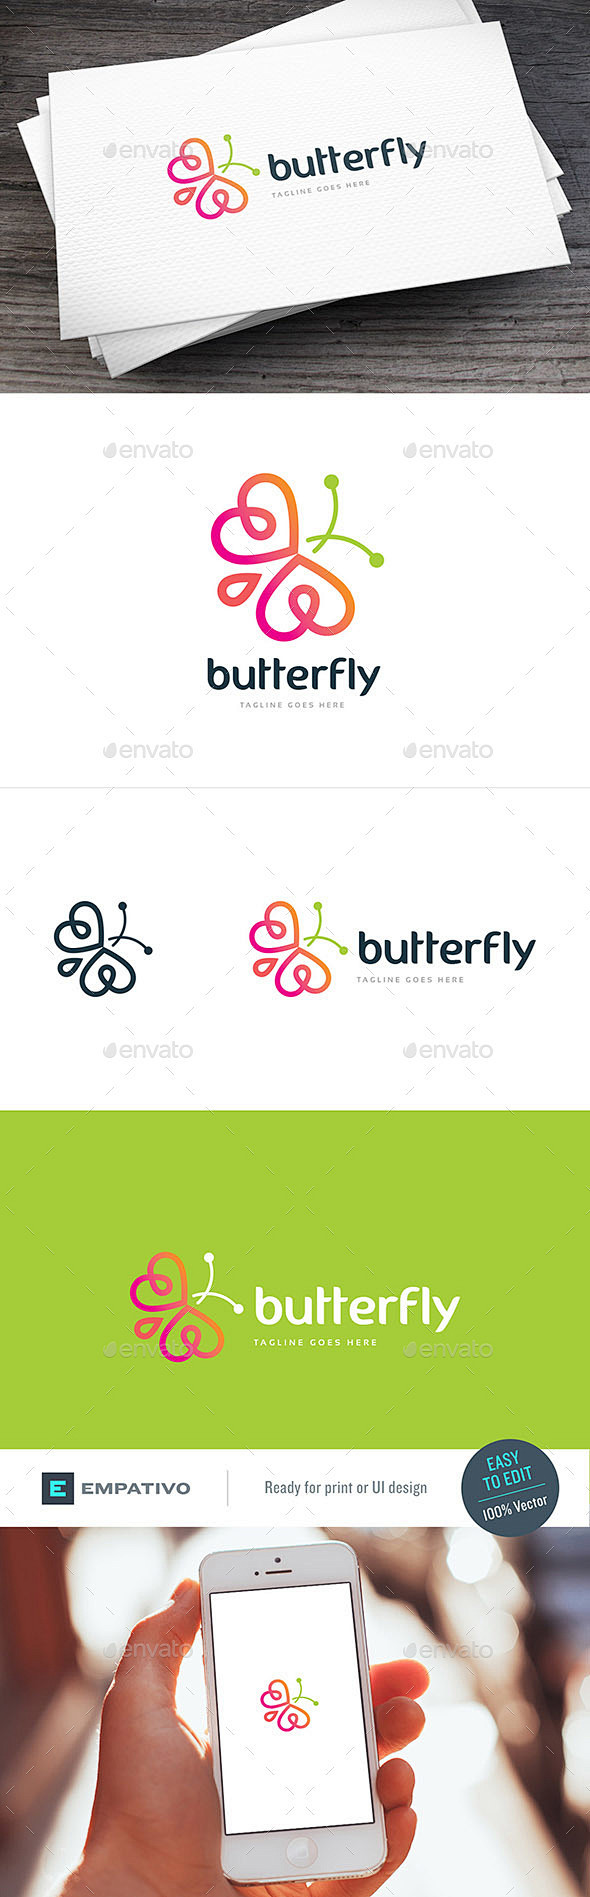 蝴蝶标志模板——动物标志模板Butter...